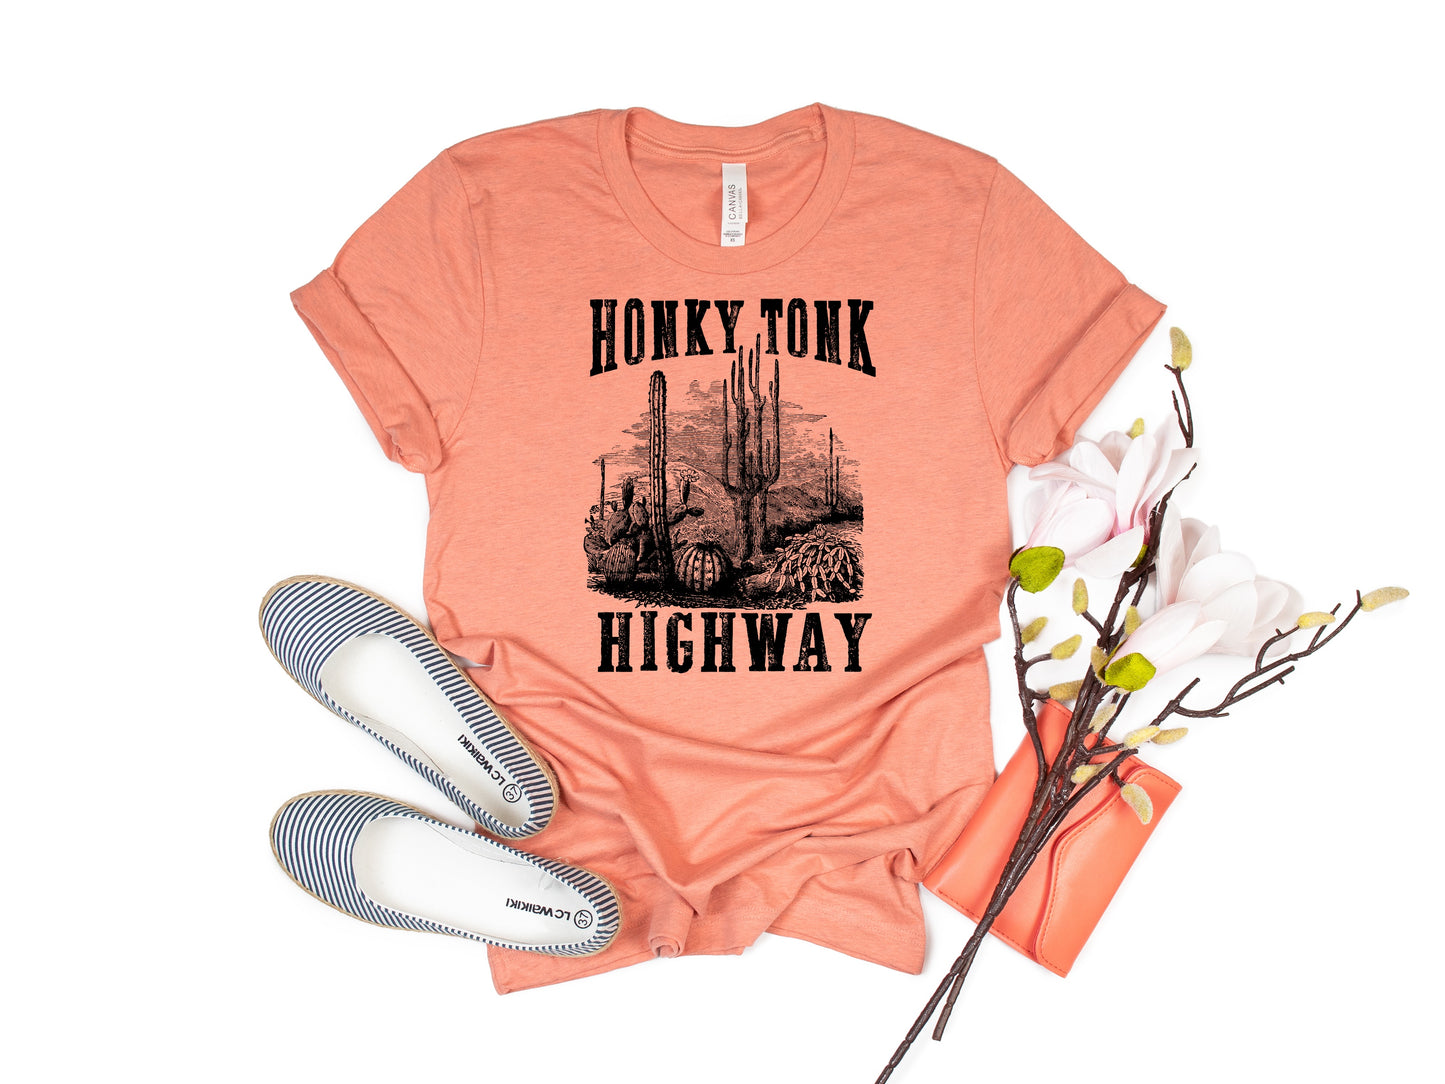 Honky Tonk Highway (HIGH HEAT 375/7)NOT RESTOCKING #814